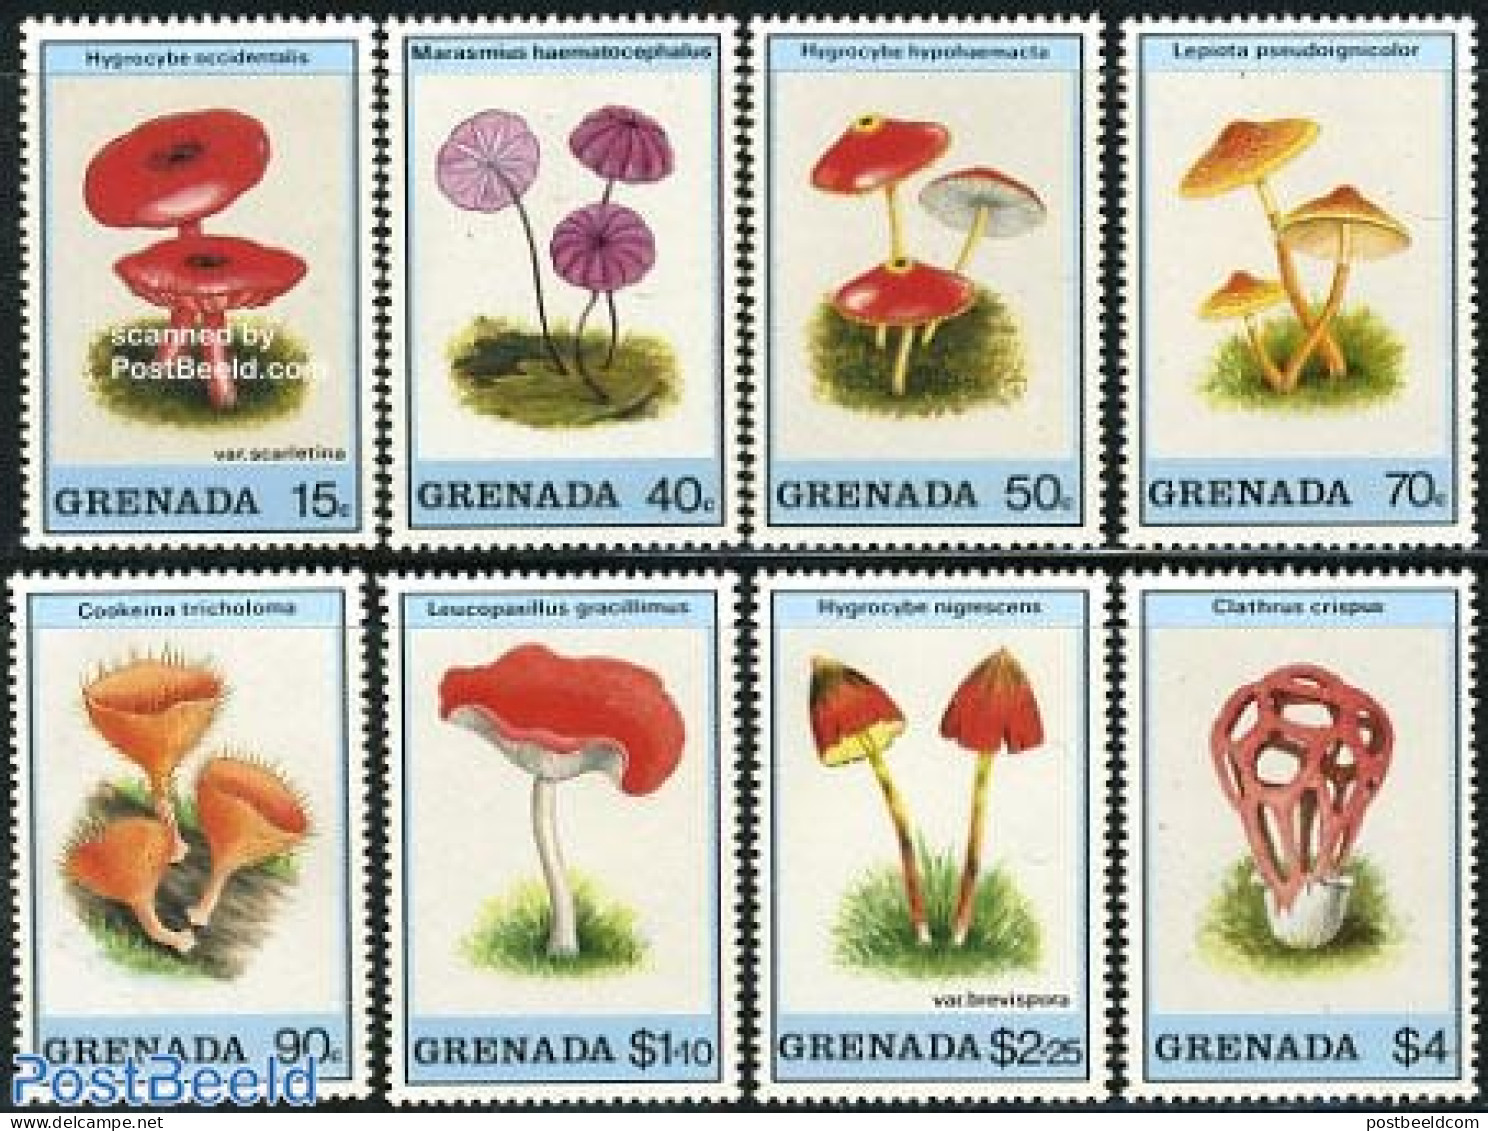 Grenada 1989 Mushrooms 8v, Mint NH, Nature - Mushrooms - Pilze